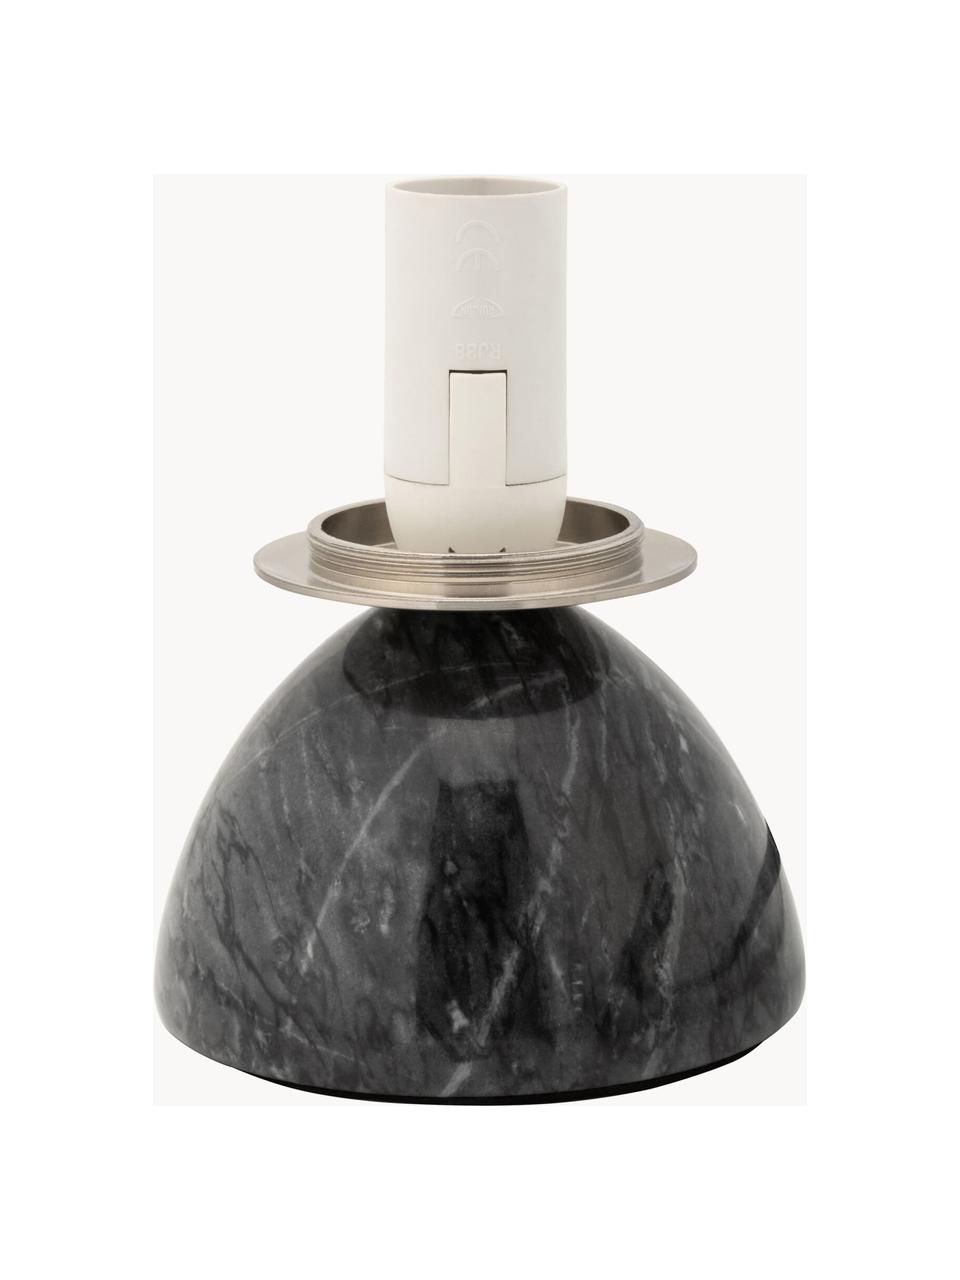 Malá stolní lampa s mramorovou základnou Shining Pearl, Černá, mramorovaná, bílá, Ø 15 cm, V 21 cm